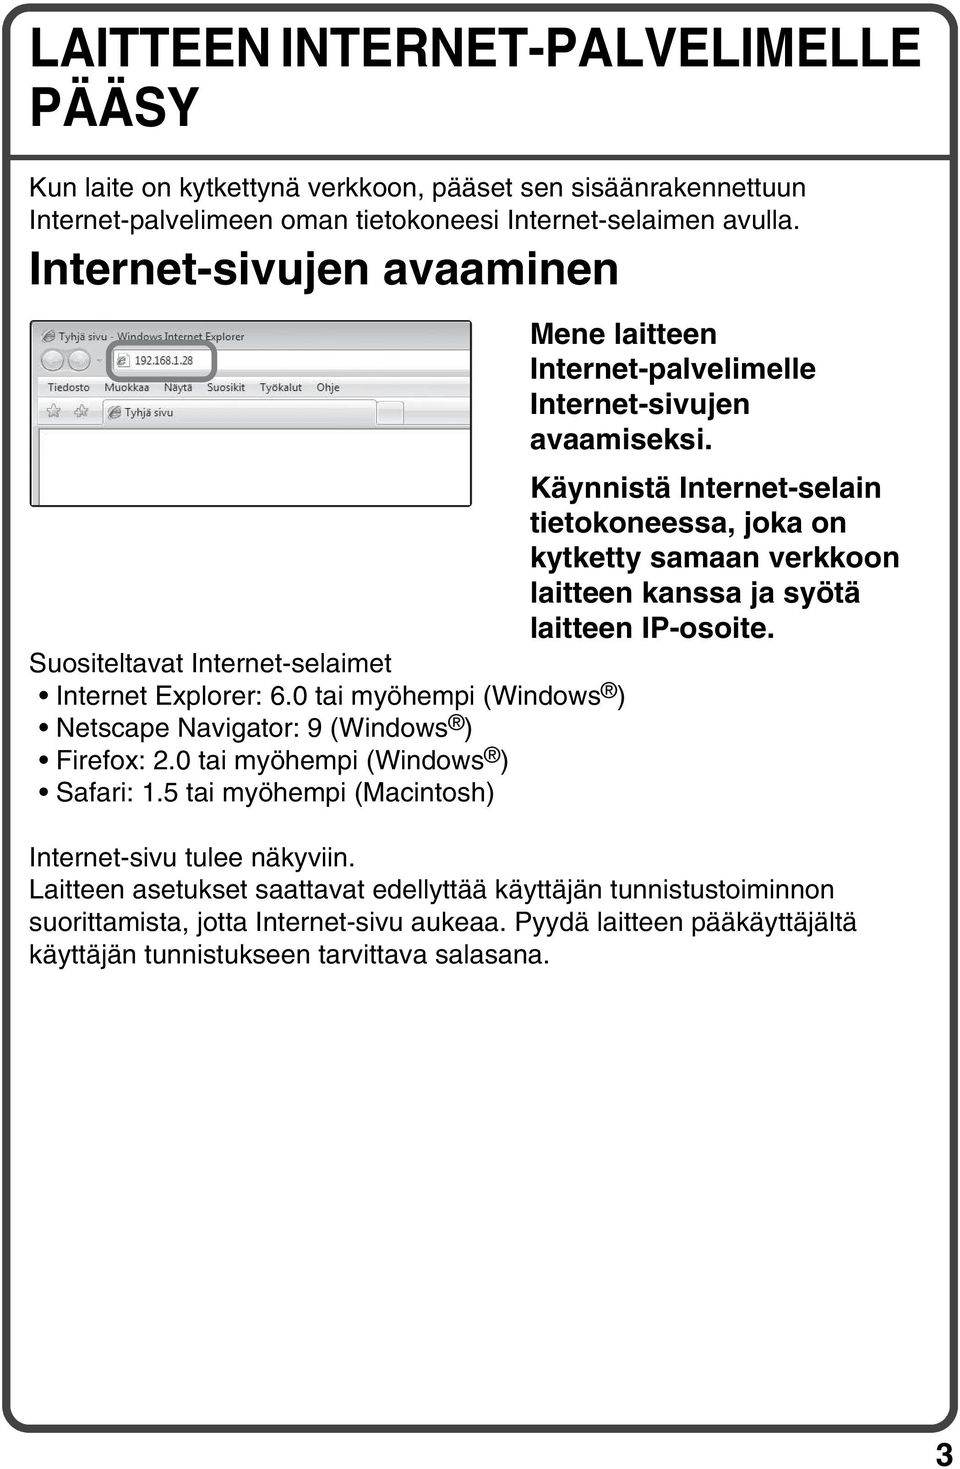 Käynnistä Internet-selain tietokoneessa, joka on kytketty samaan verkkoon laitteen kanssa ja syötä laitteen IP-osoite. Suositeltavat Internet-selaimet Internet Explorer: 6.